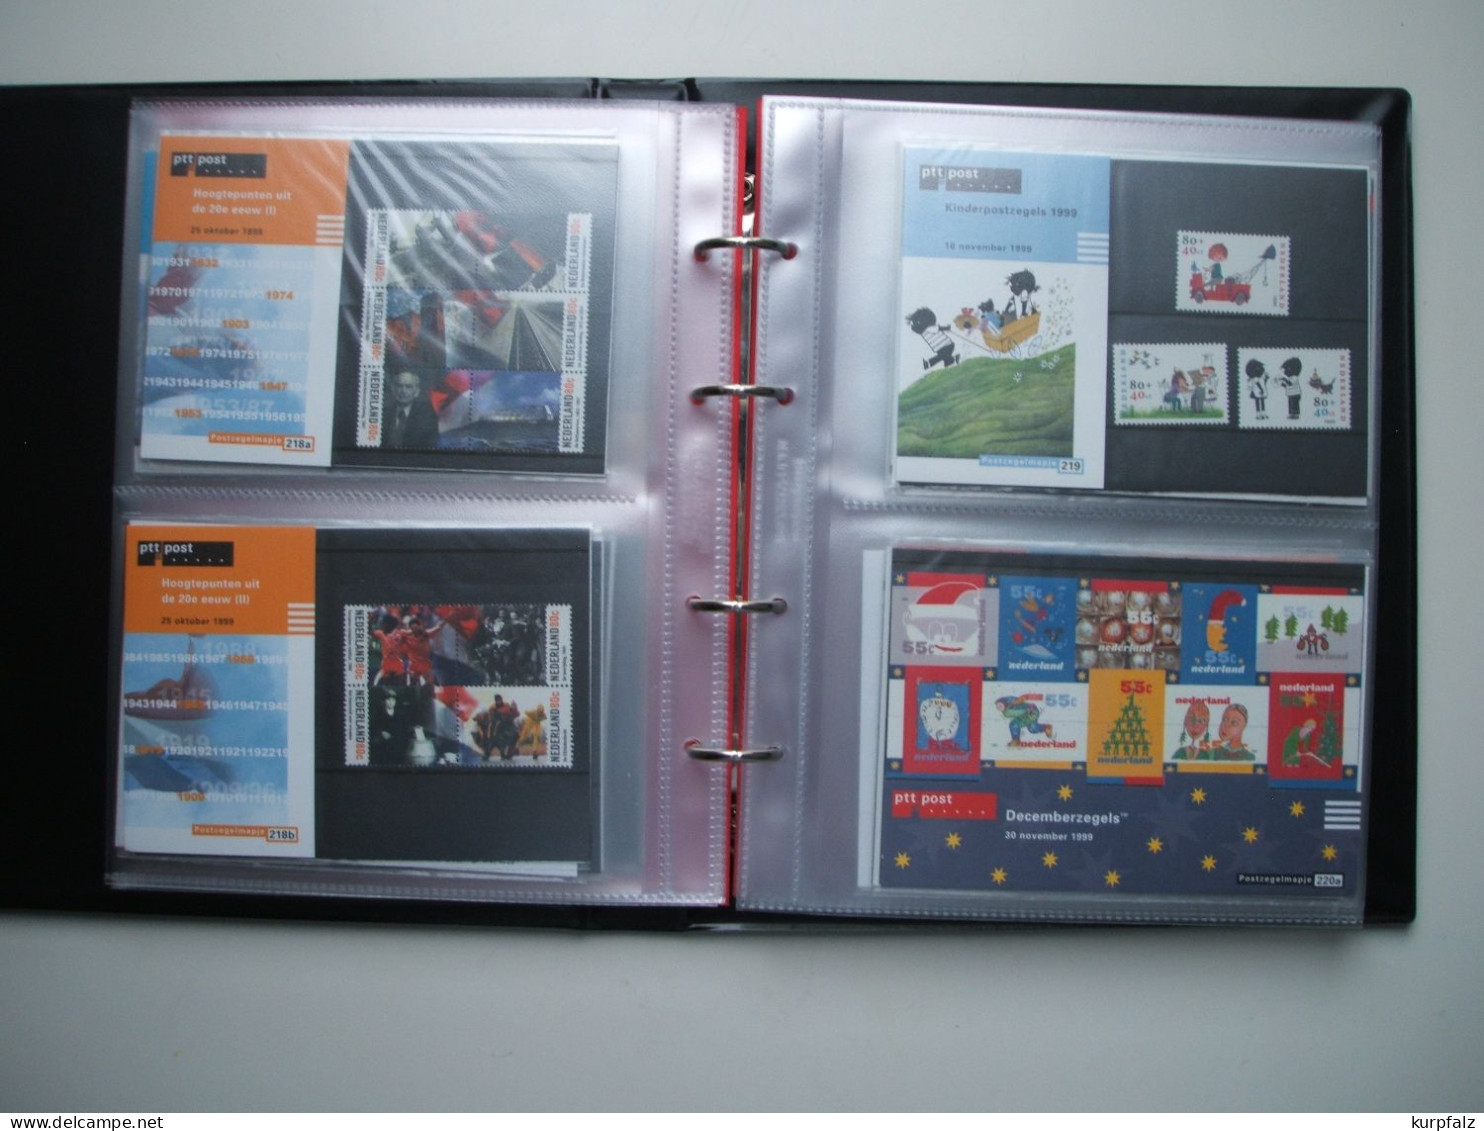 Niederlande - postfrisch 1999 (Nr. 201) - 2001 (244) in 52 Postzegelmapjes, Marken meist mehrfach